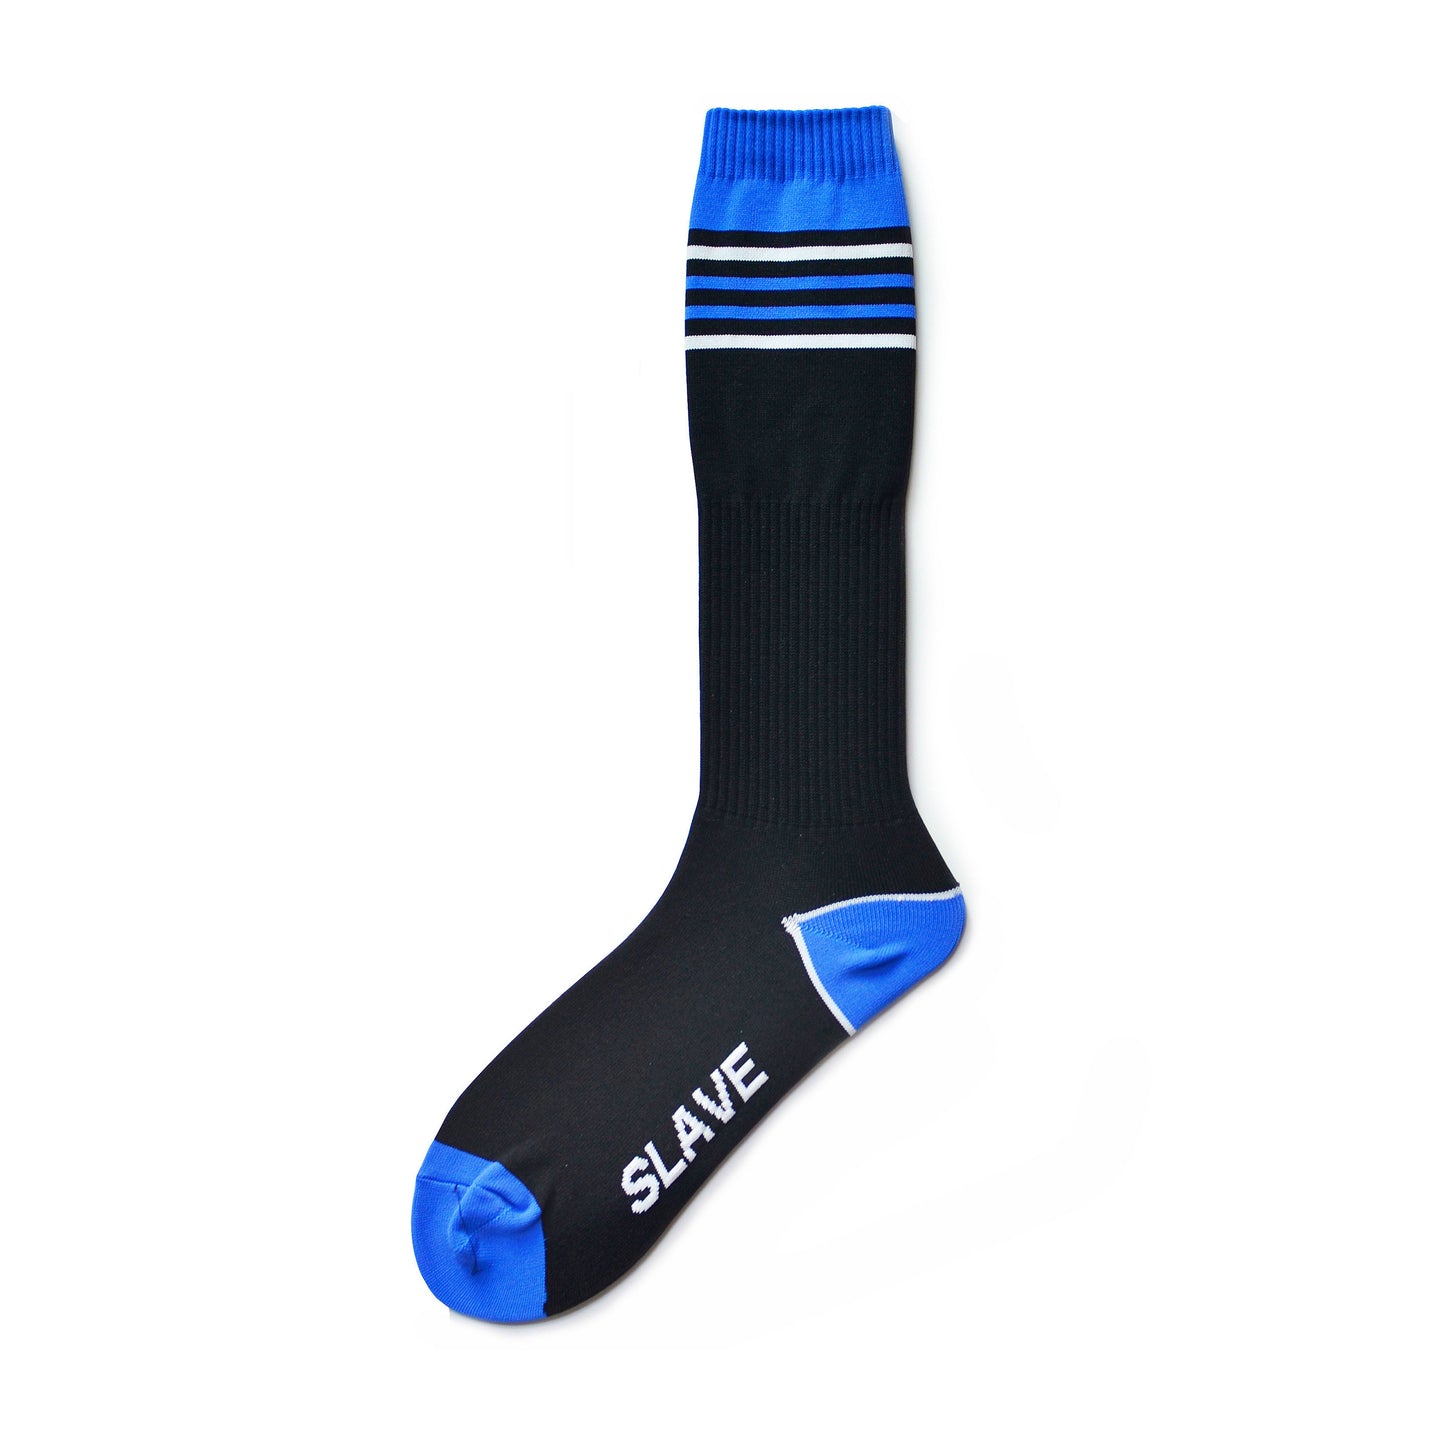 Striped high-tube nylon soccer socks for athletic durability